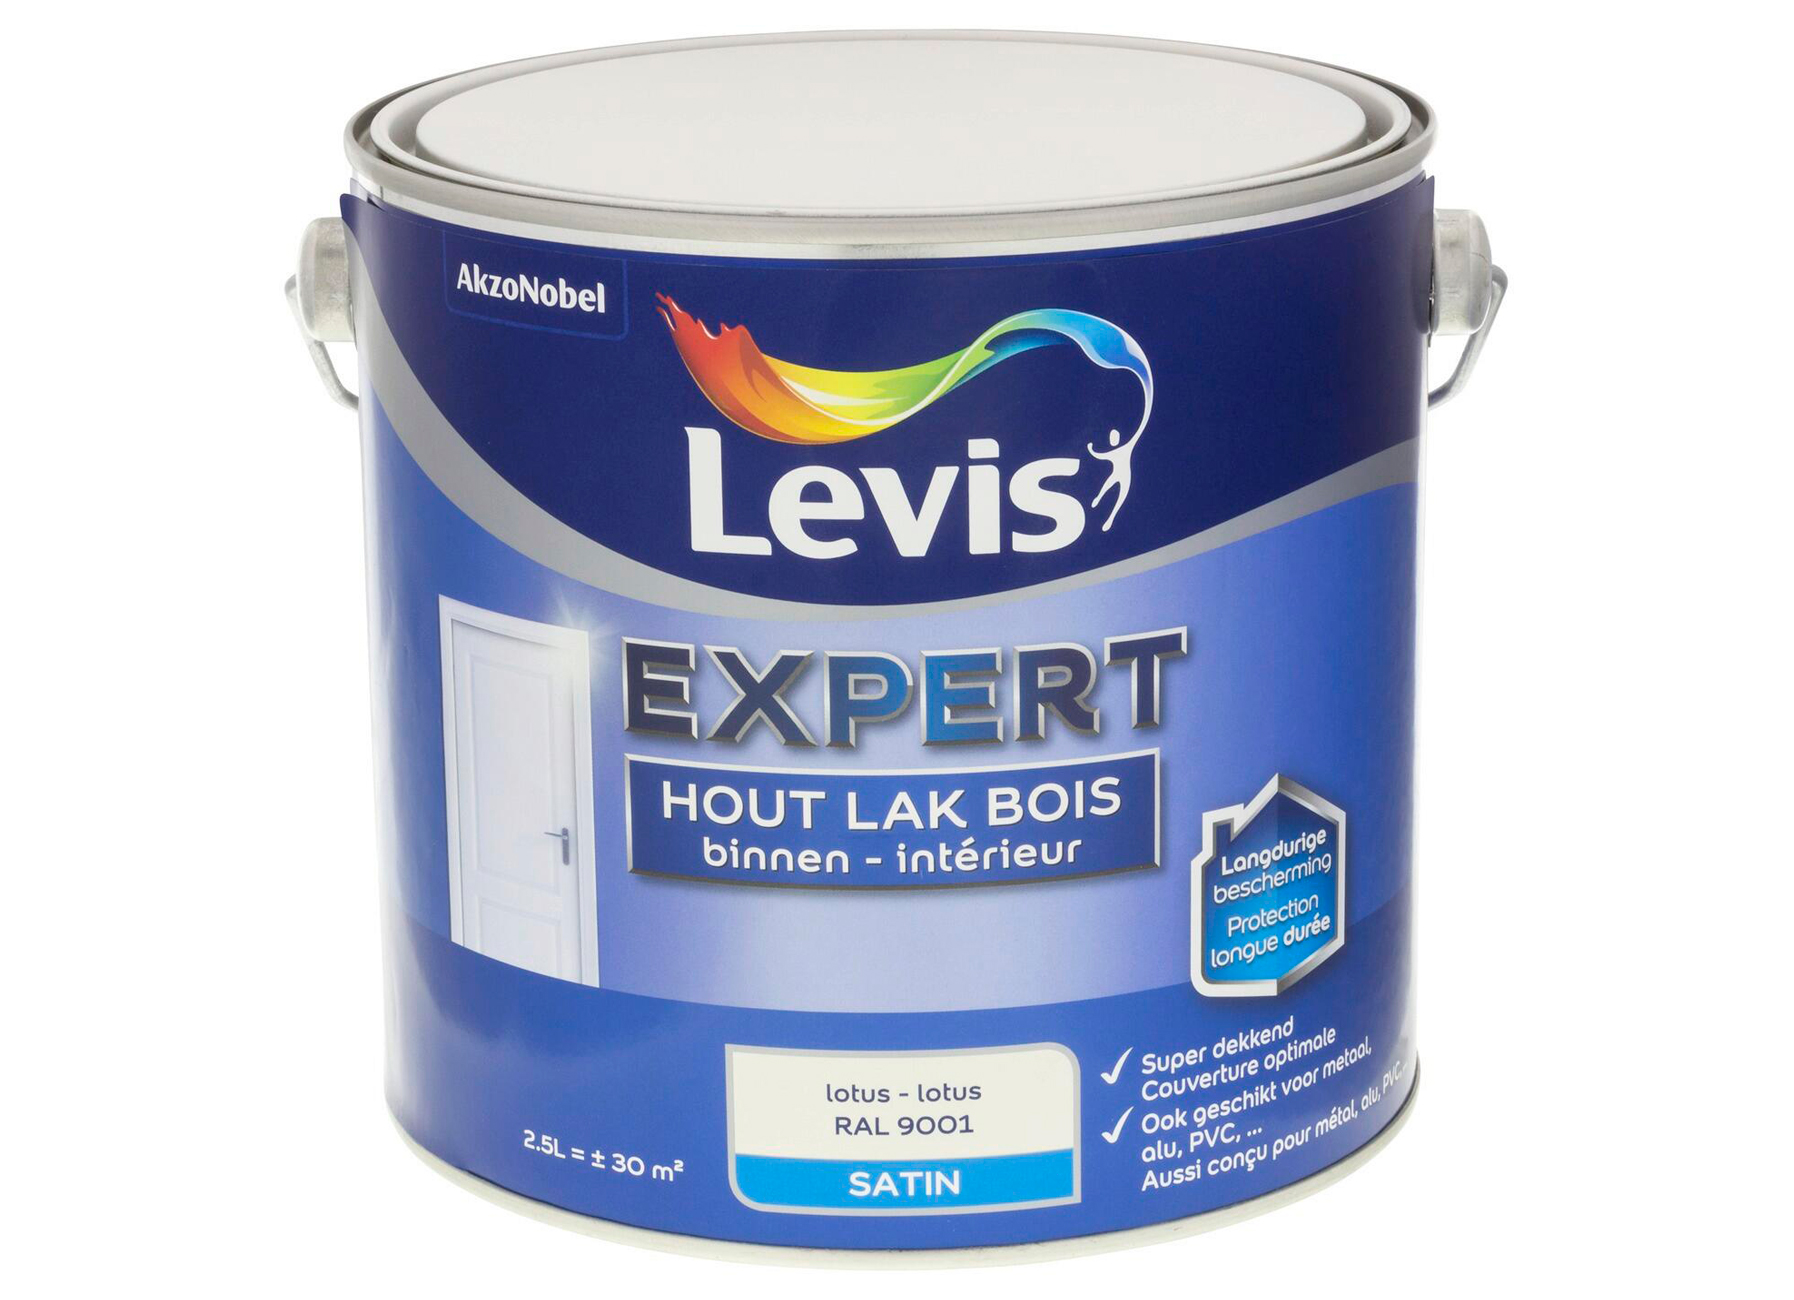 LEVIS EXPERT LAK BOIS INTERIEUR SATIN LOTUS 4441 2,5L